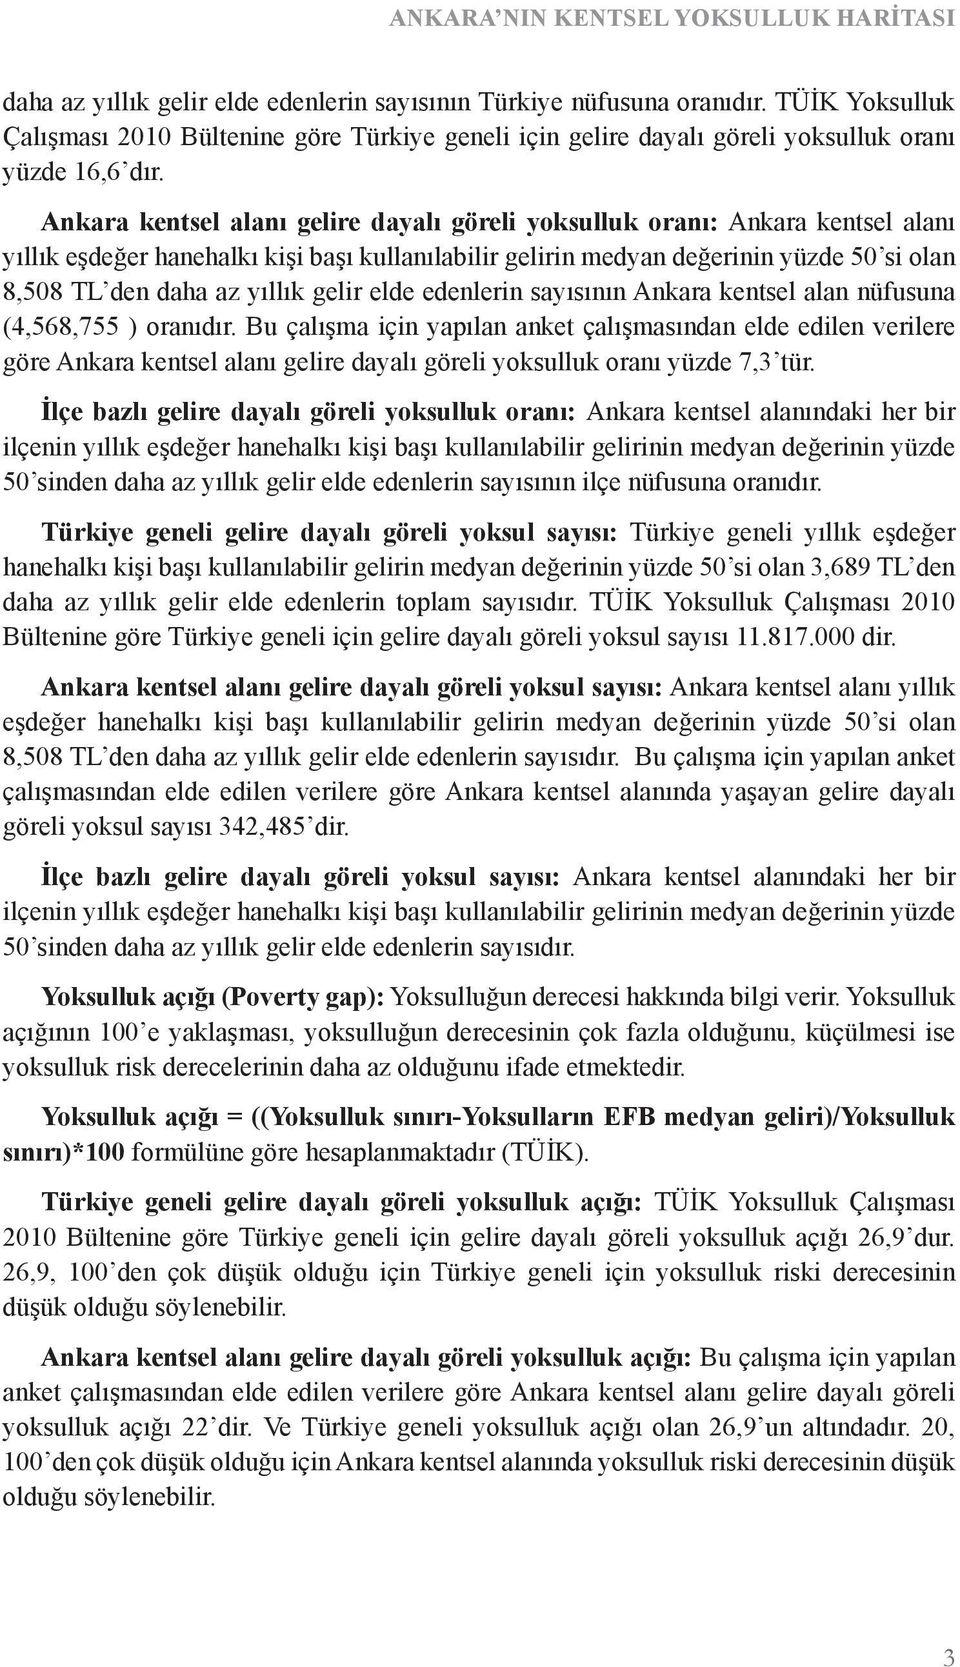 Ankara kentsel alanı gelire dayalı göreli yoksulluk oranı: Ankara kentsel alanı yıllık eşdeğer hanehalkı kişi başı kullanılabilir gelirin medyan değerinin yüzde 50 si olan 8,508 TL den daha az yıllık